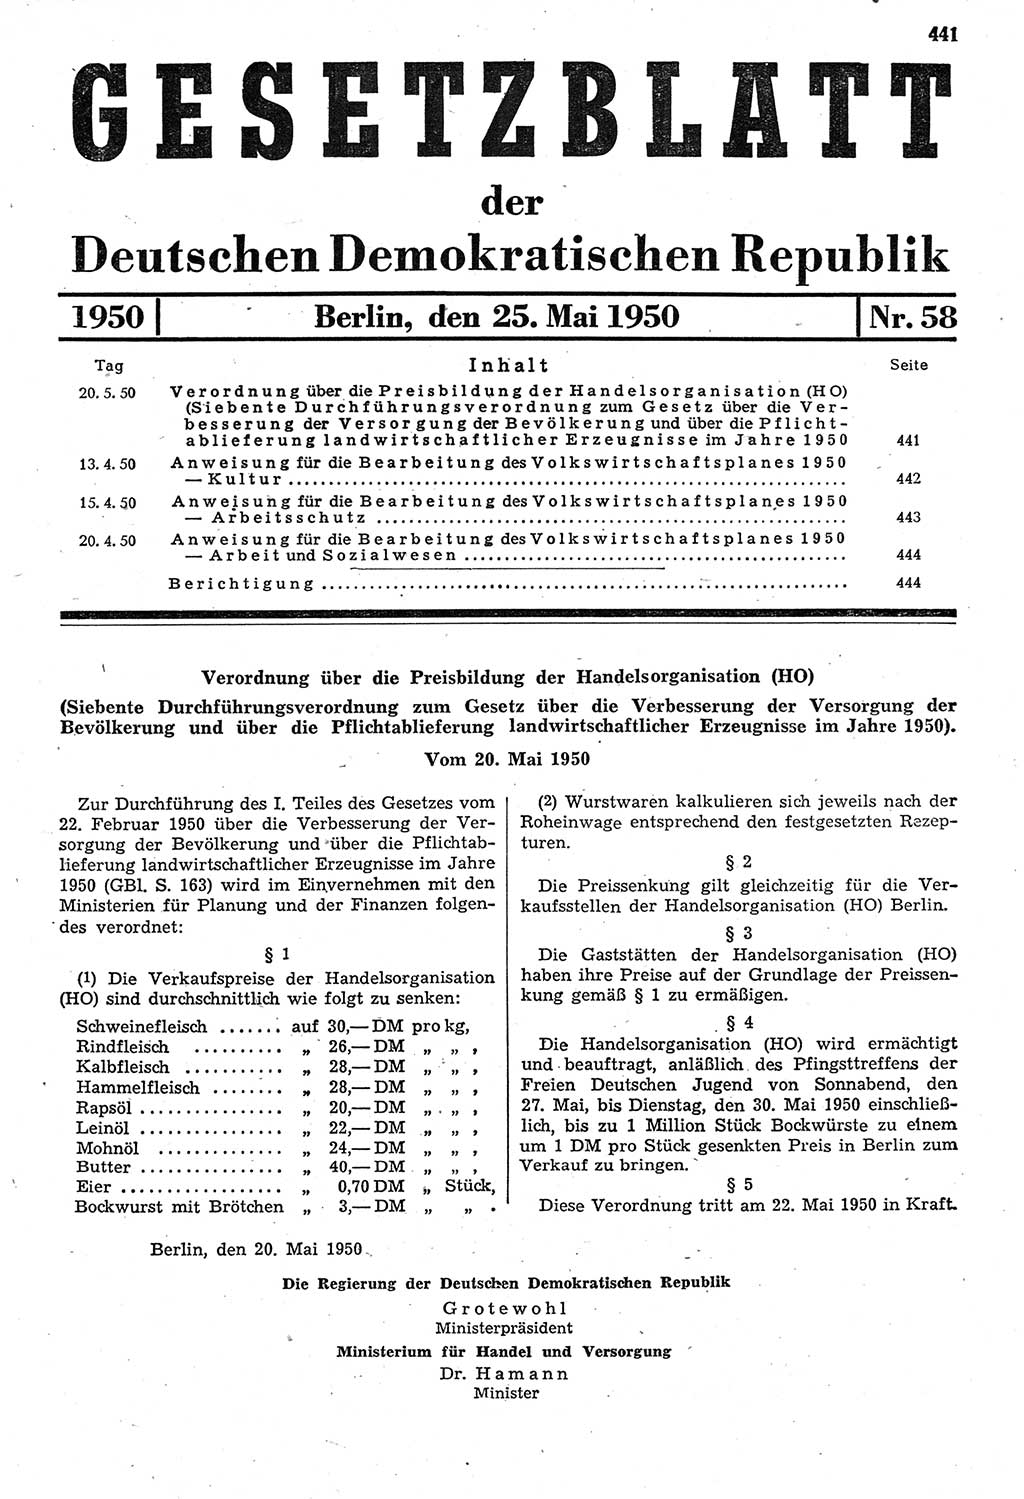 Gesetzblatt (GBl.) der Deutschen Demokratischen Republik (DDR) 1950, Seite 441 (GBl. DDR 1950, S. 441)